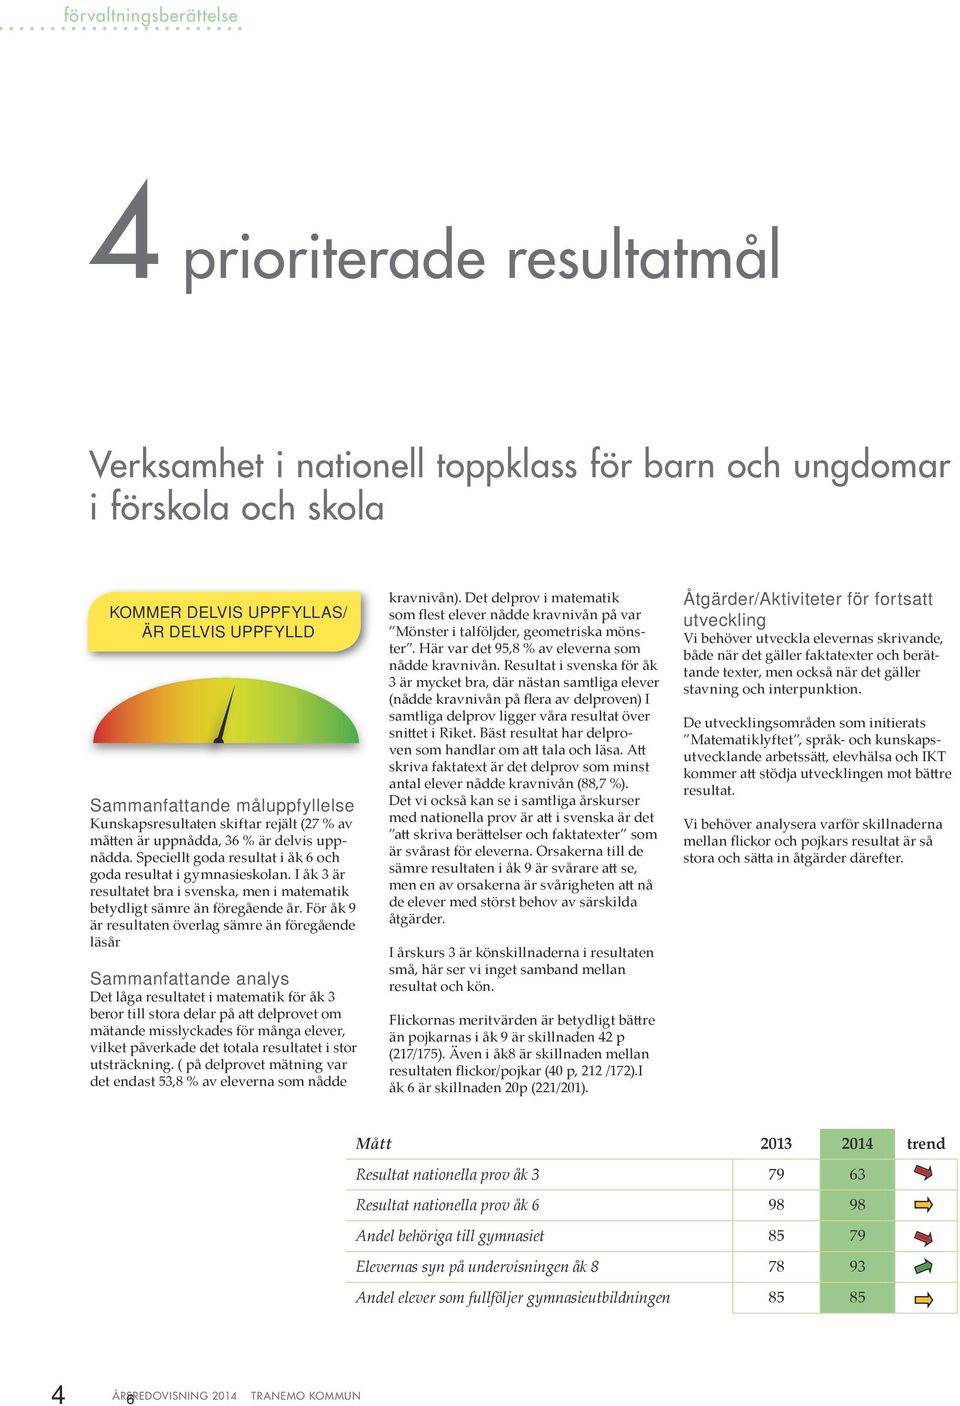 I åk 3 är resultatet bra i svenska, men i matematik betydligt sämre än föregående år.